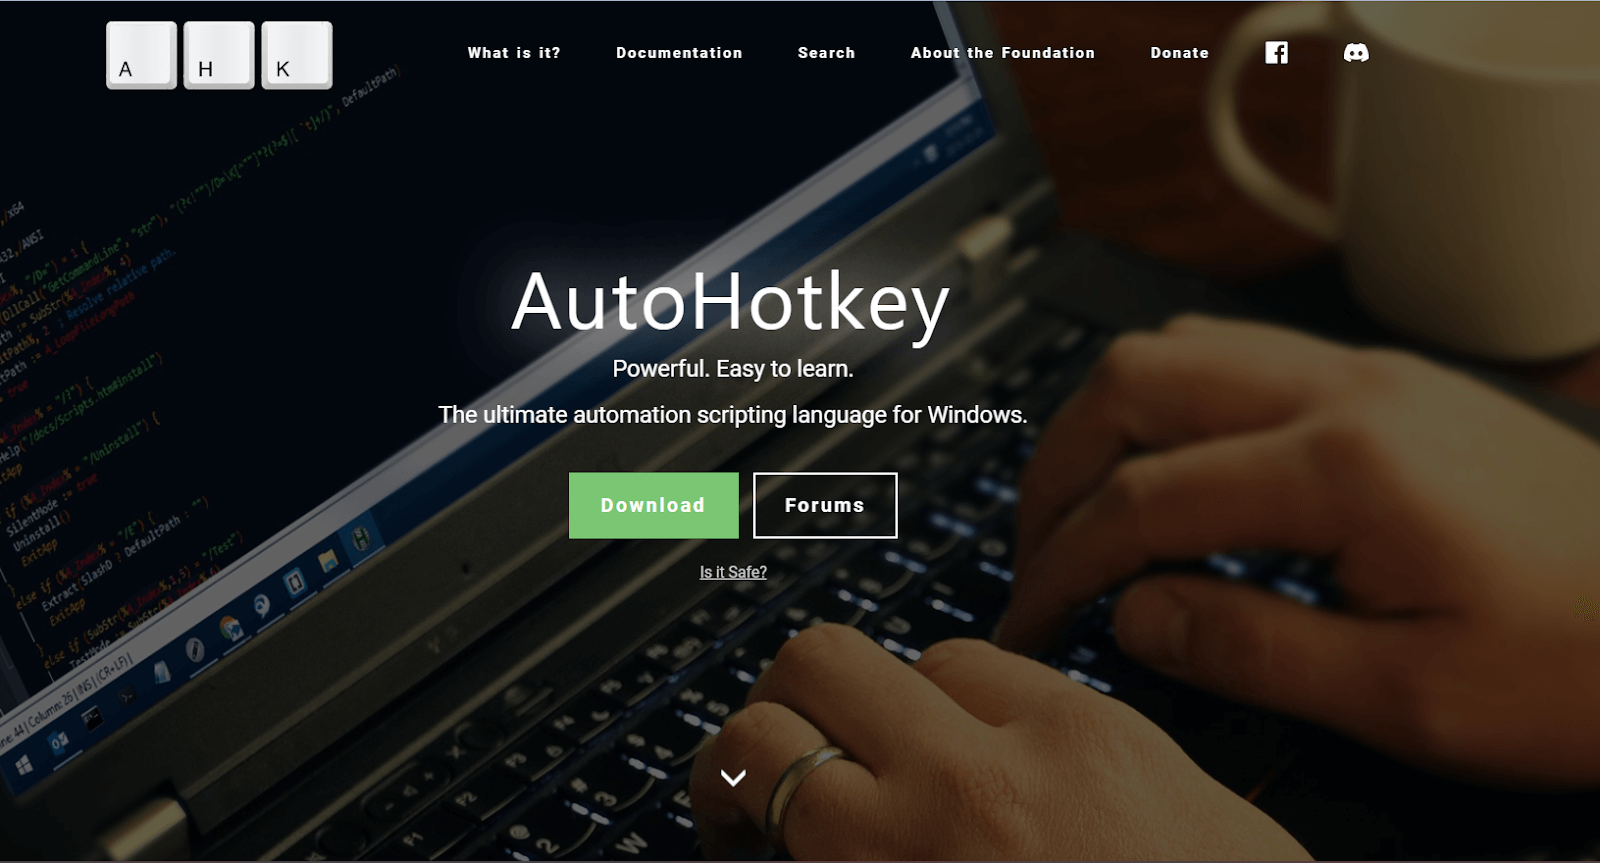 Desktop Automation: AutoHotkey